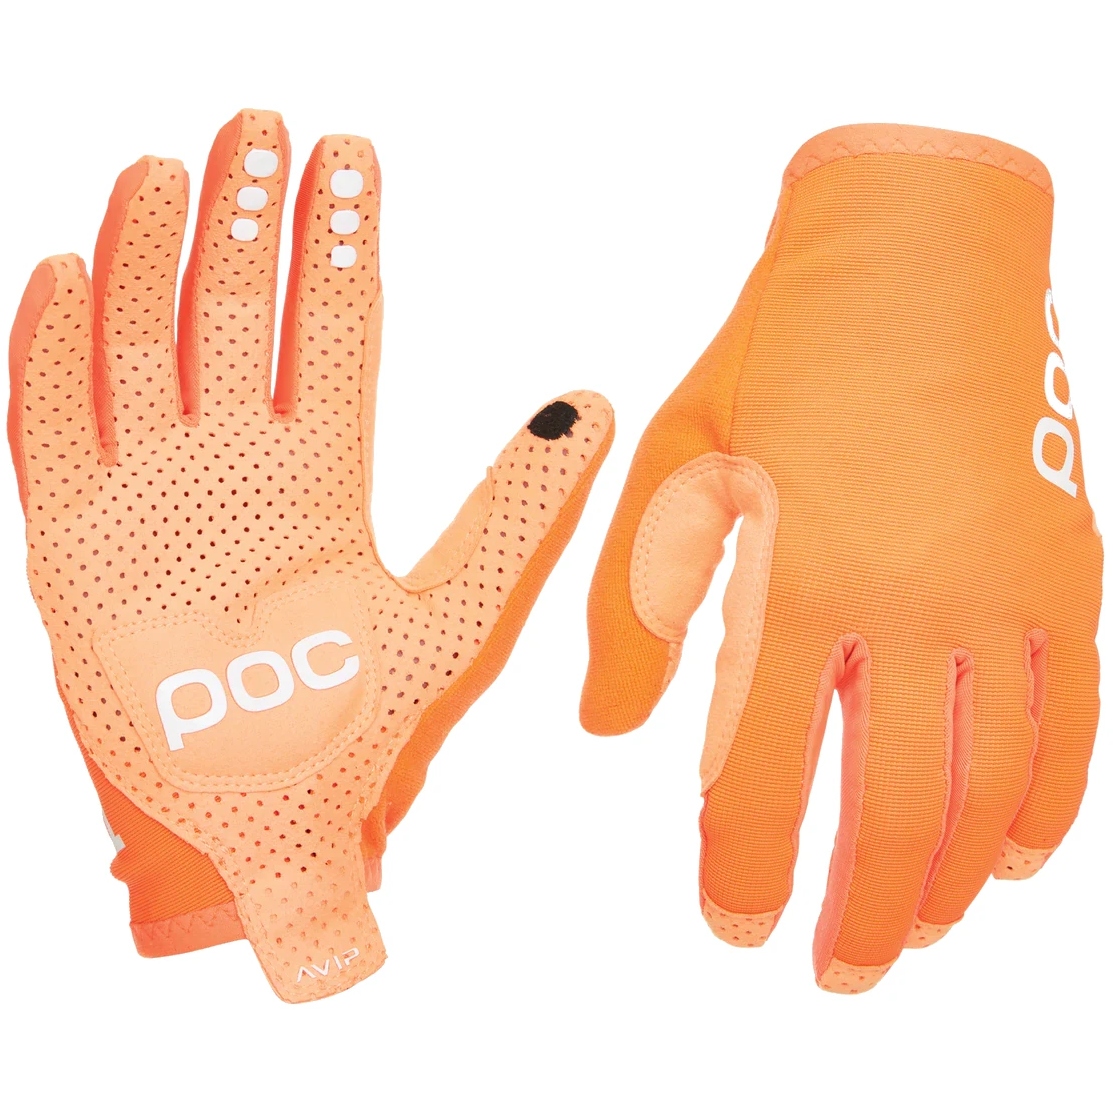 Produktbild von POC AVIP Long Handschuhe - 1205 Zink Orange